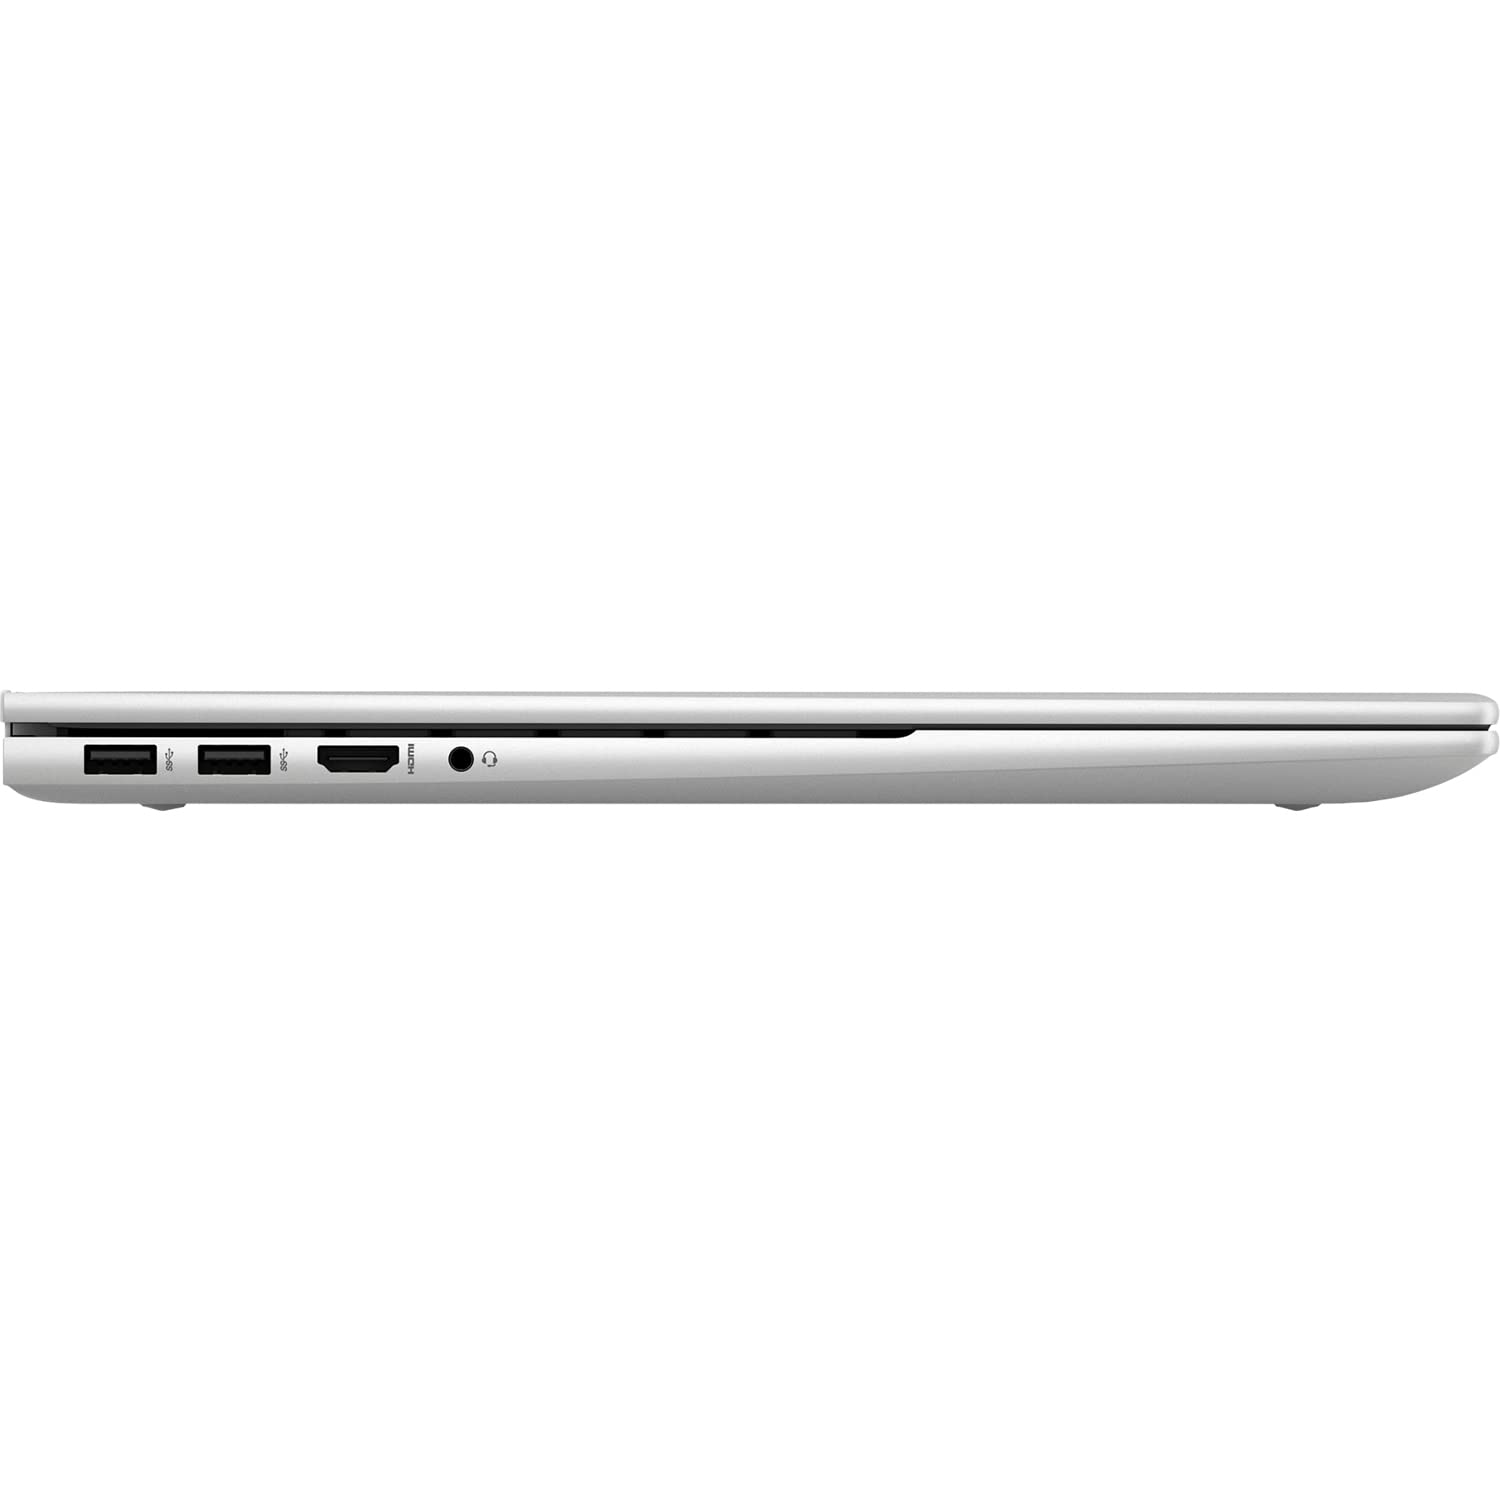 HP Envy Business Laptop, 17.3